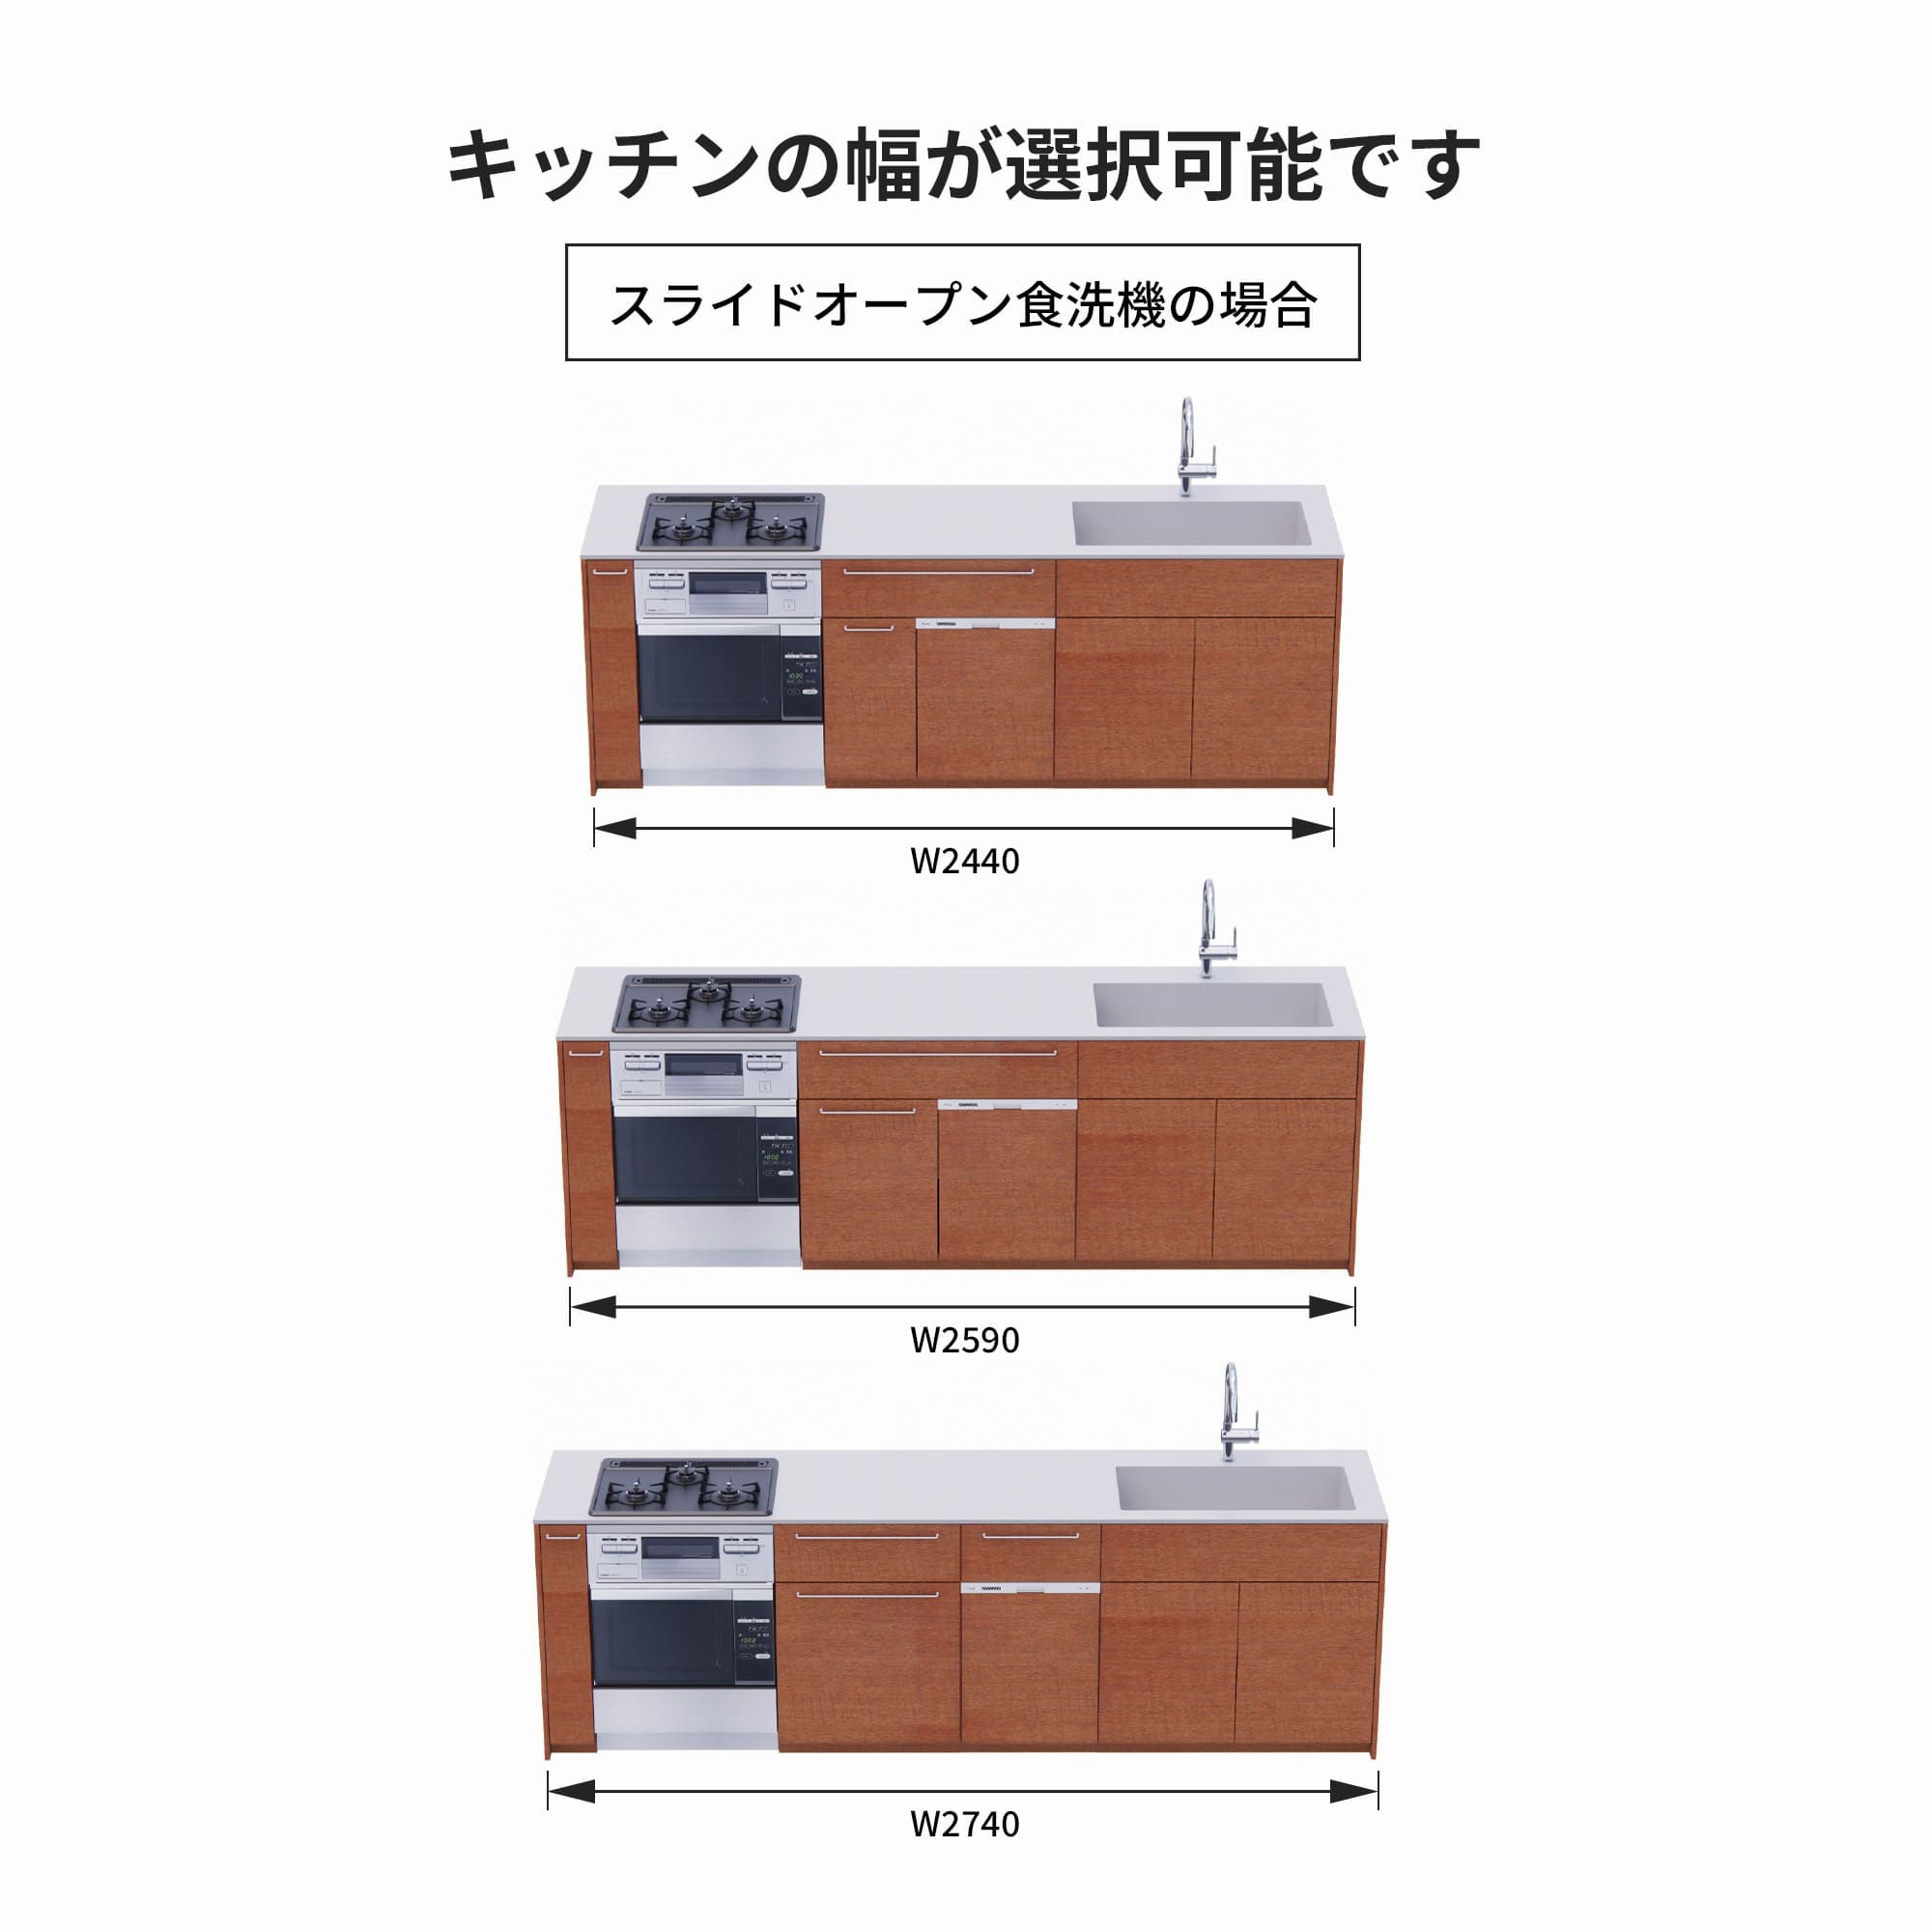 木製システムキッチン 壁付け型 W2440～2740・コンロあり / オーブンあり / 食洗機あり KB-KC022-28-G183 スライドオープンの場合